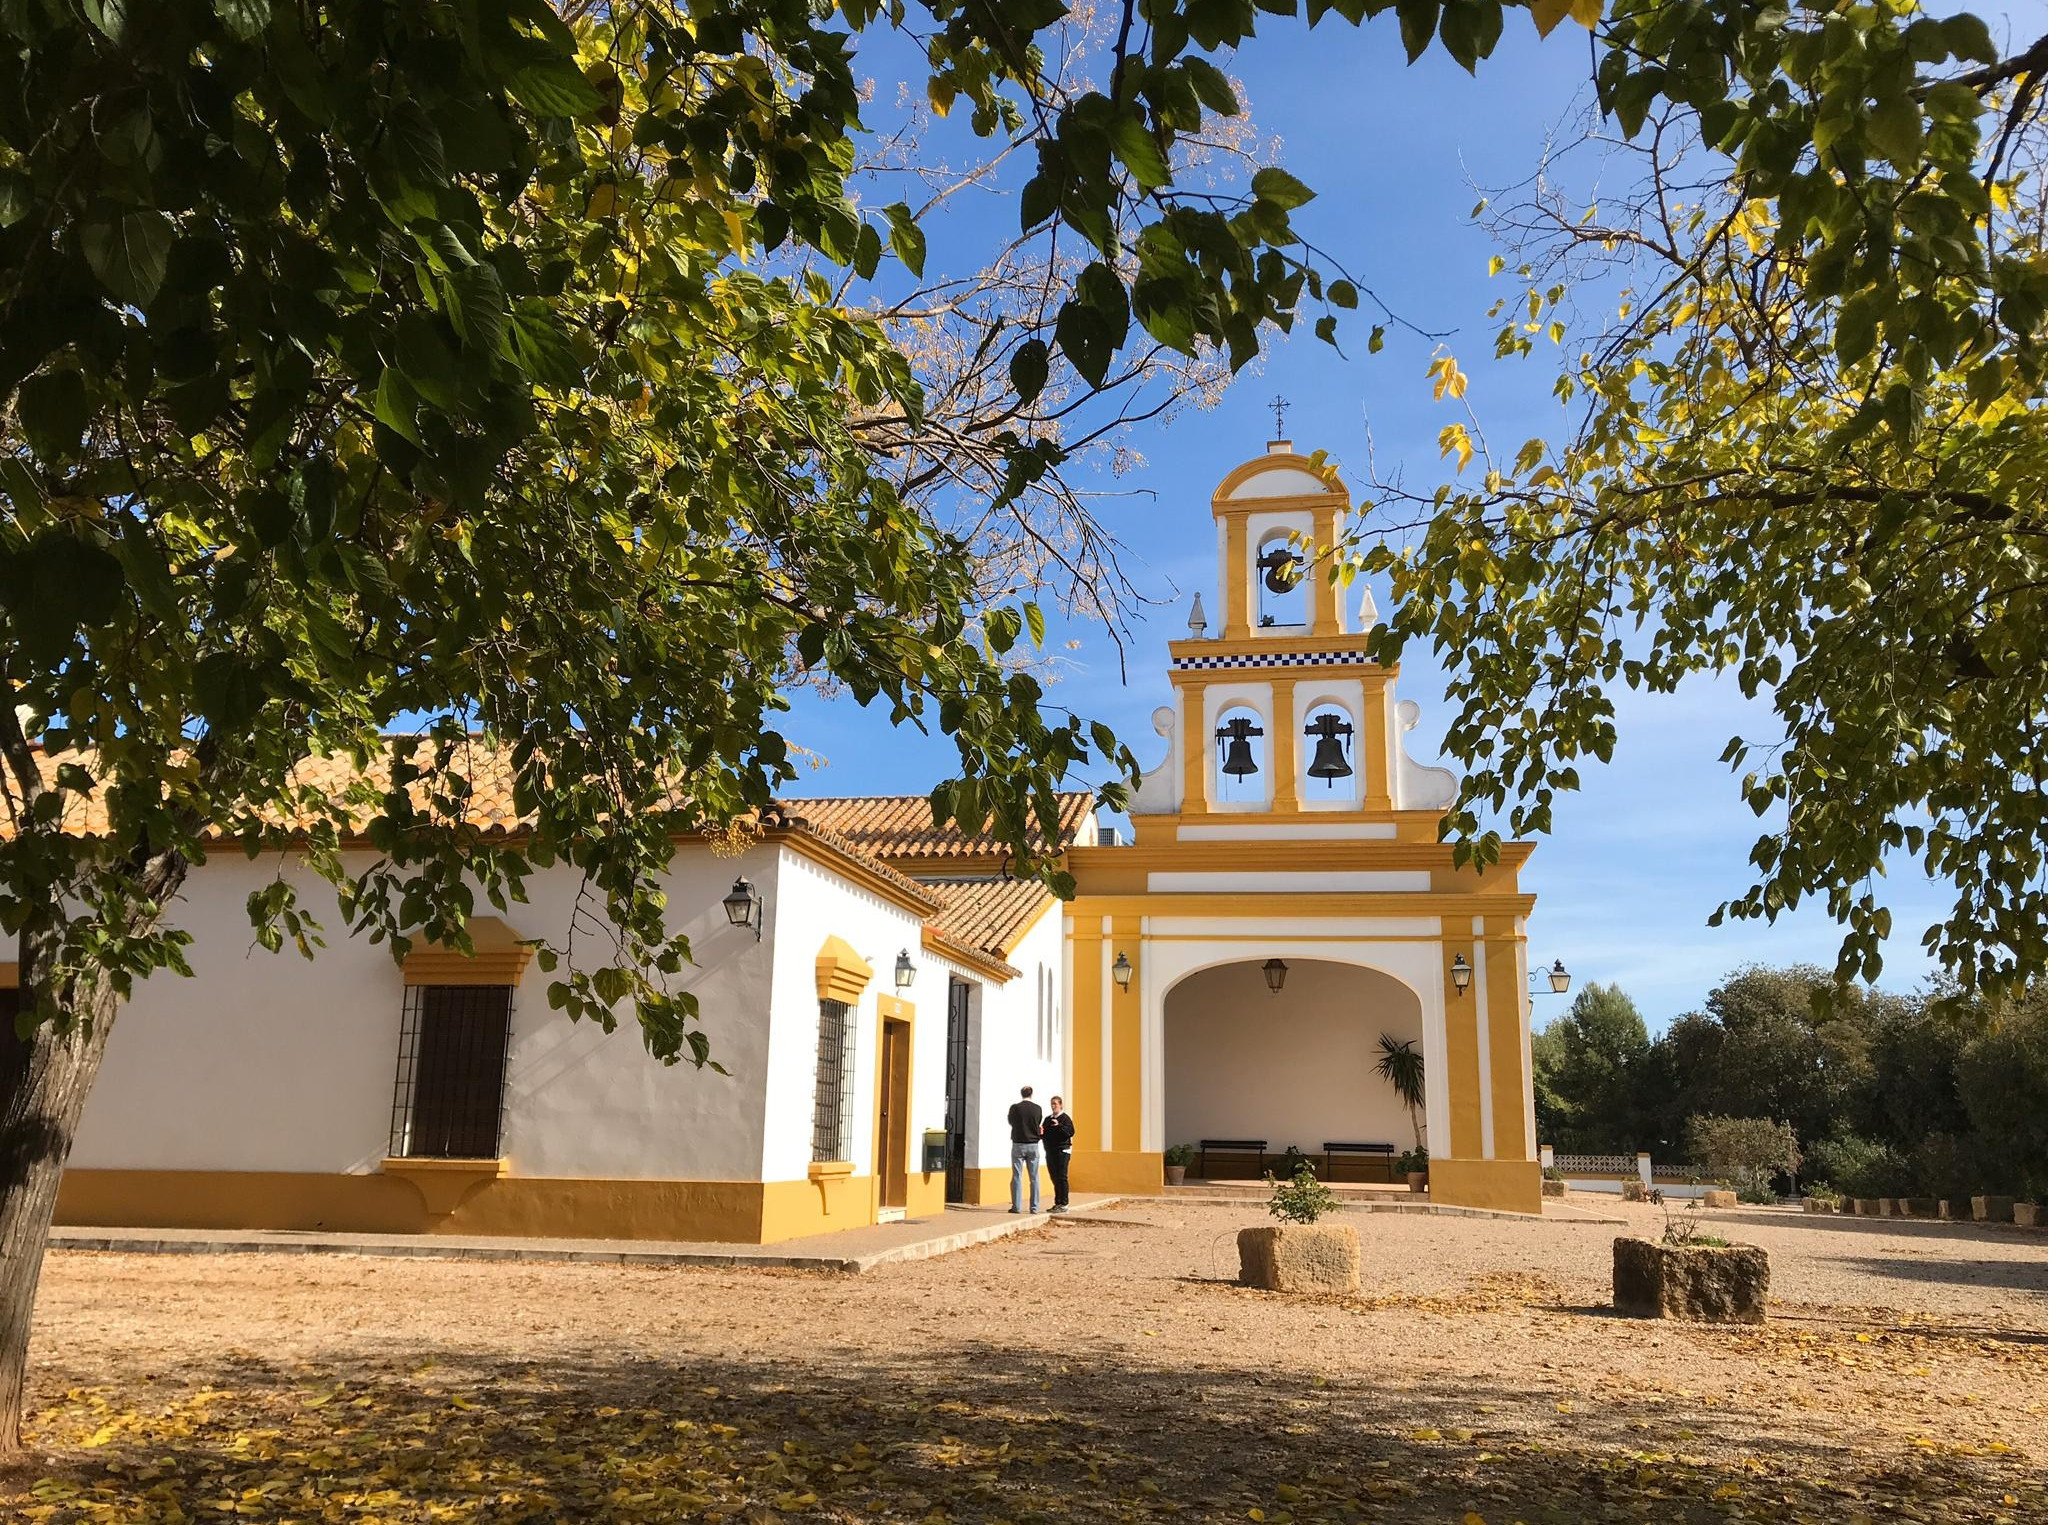 Santa Maria de las Escalonias: Historia de un encuentro